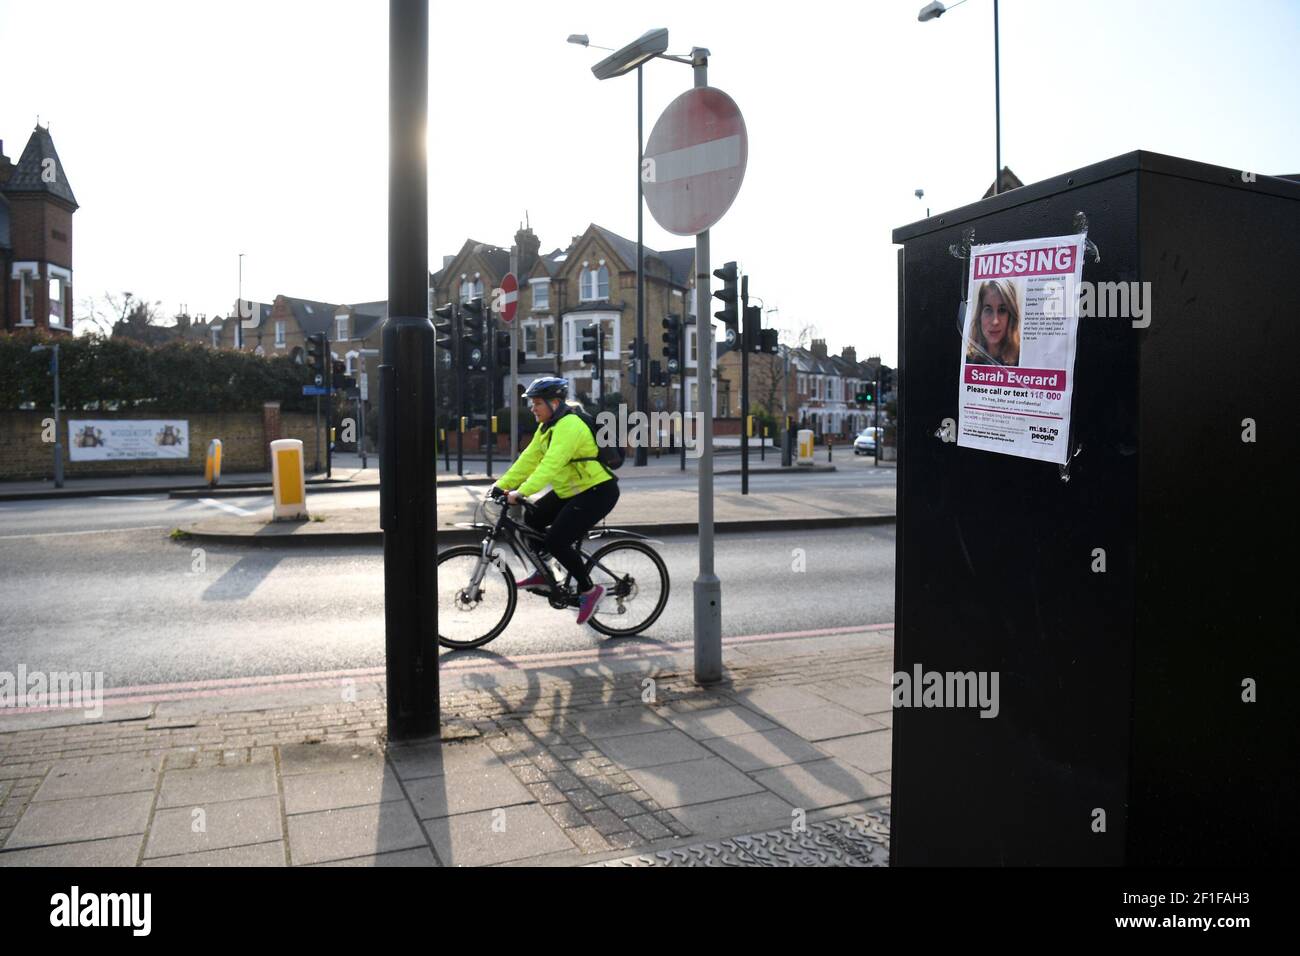 Une femme passe devant une affiche manquante le long de la route A205 Poynders, à la jonction avec la route Cavendish à Clapham, dans le sud de Londres, après la découverte d'une nouvelle CCTV de la femme disparue Sarah Everard, 33 ans. Sarah a quitté la maison d'un ami à Clapham, dans le sud de Londres, mercredi soir vers 21h et a commencé à rentrer à pied à Brixton. Date de la photo: Lundi 8 mars 2021. Banque D'Images